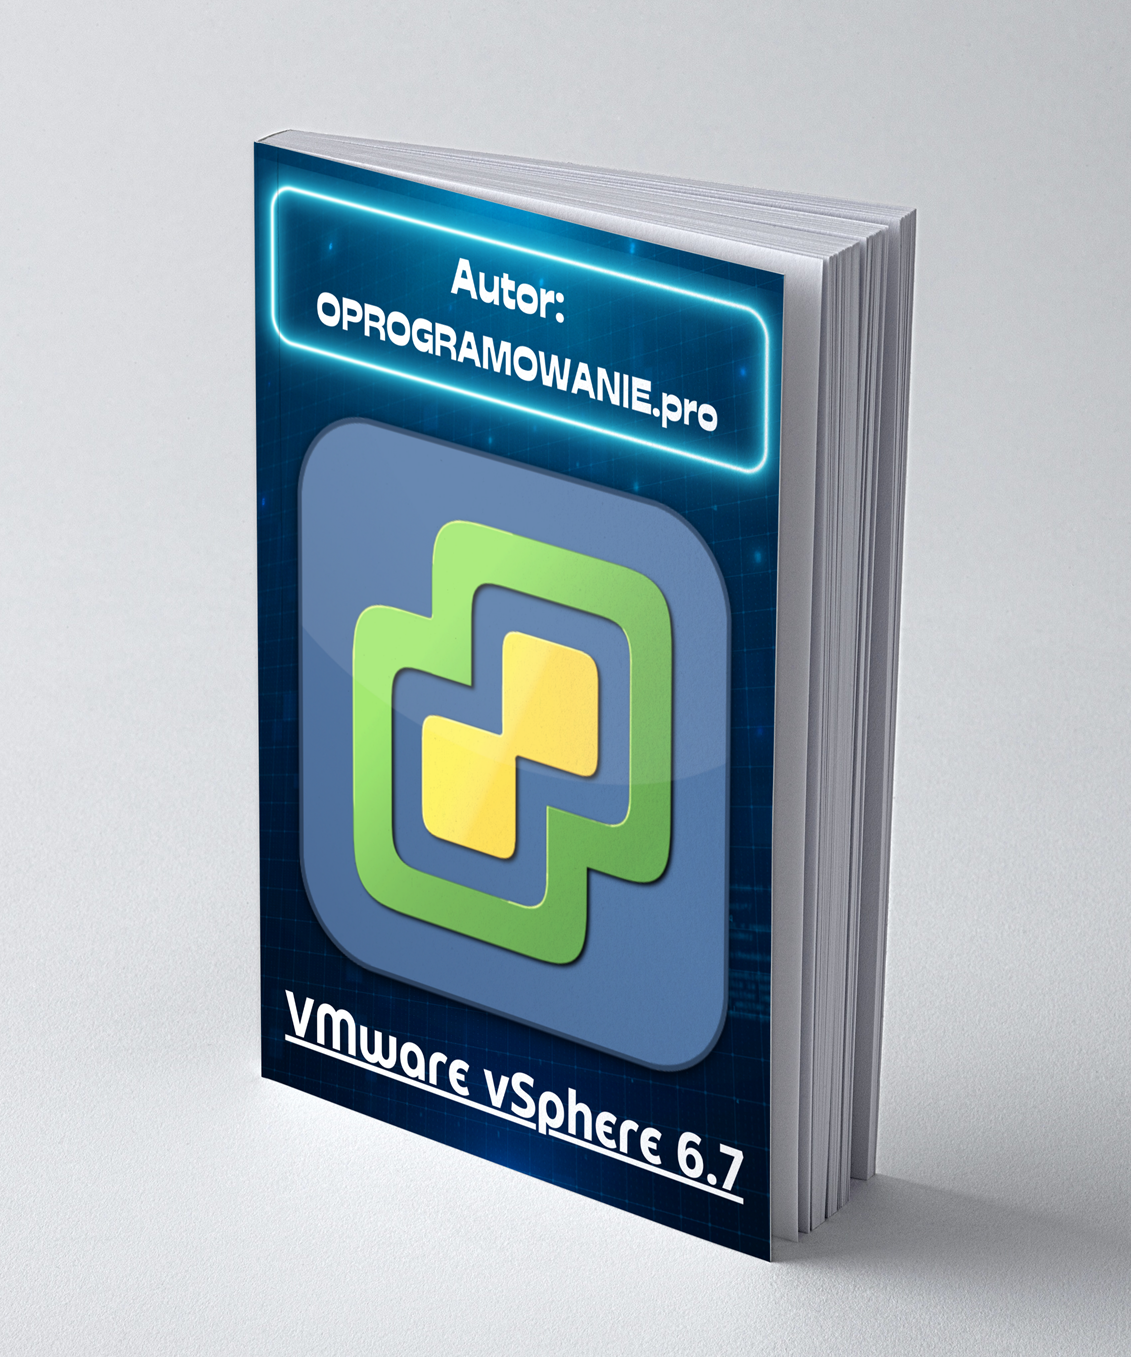 VMware vSphere 6.7